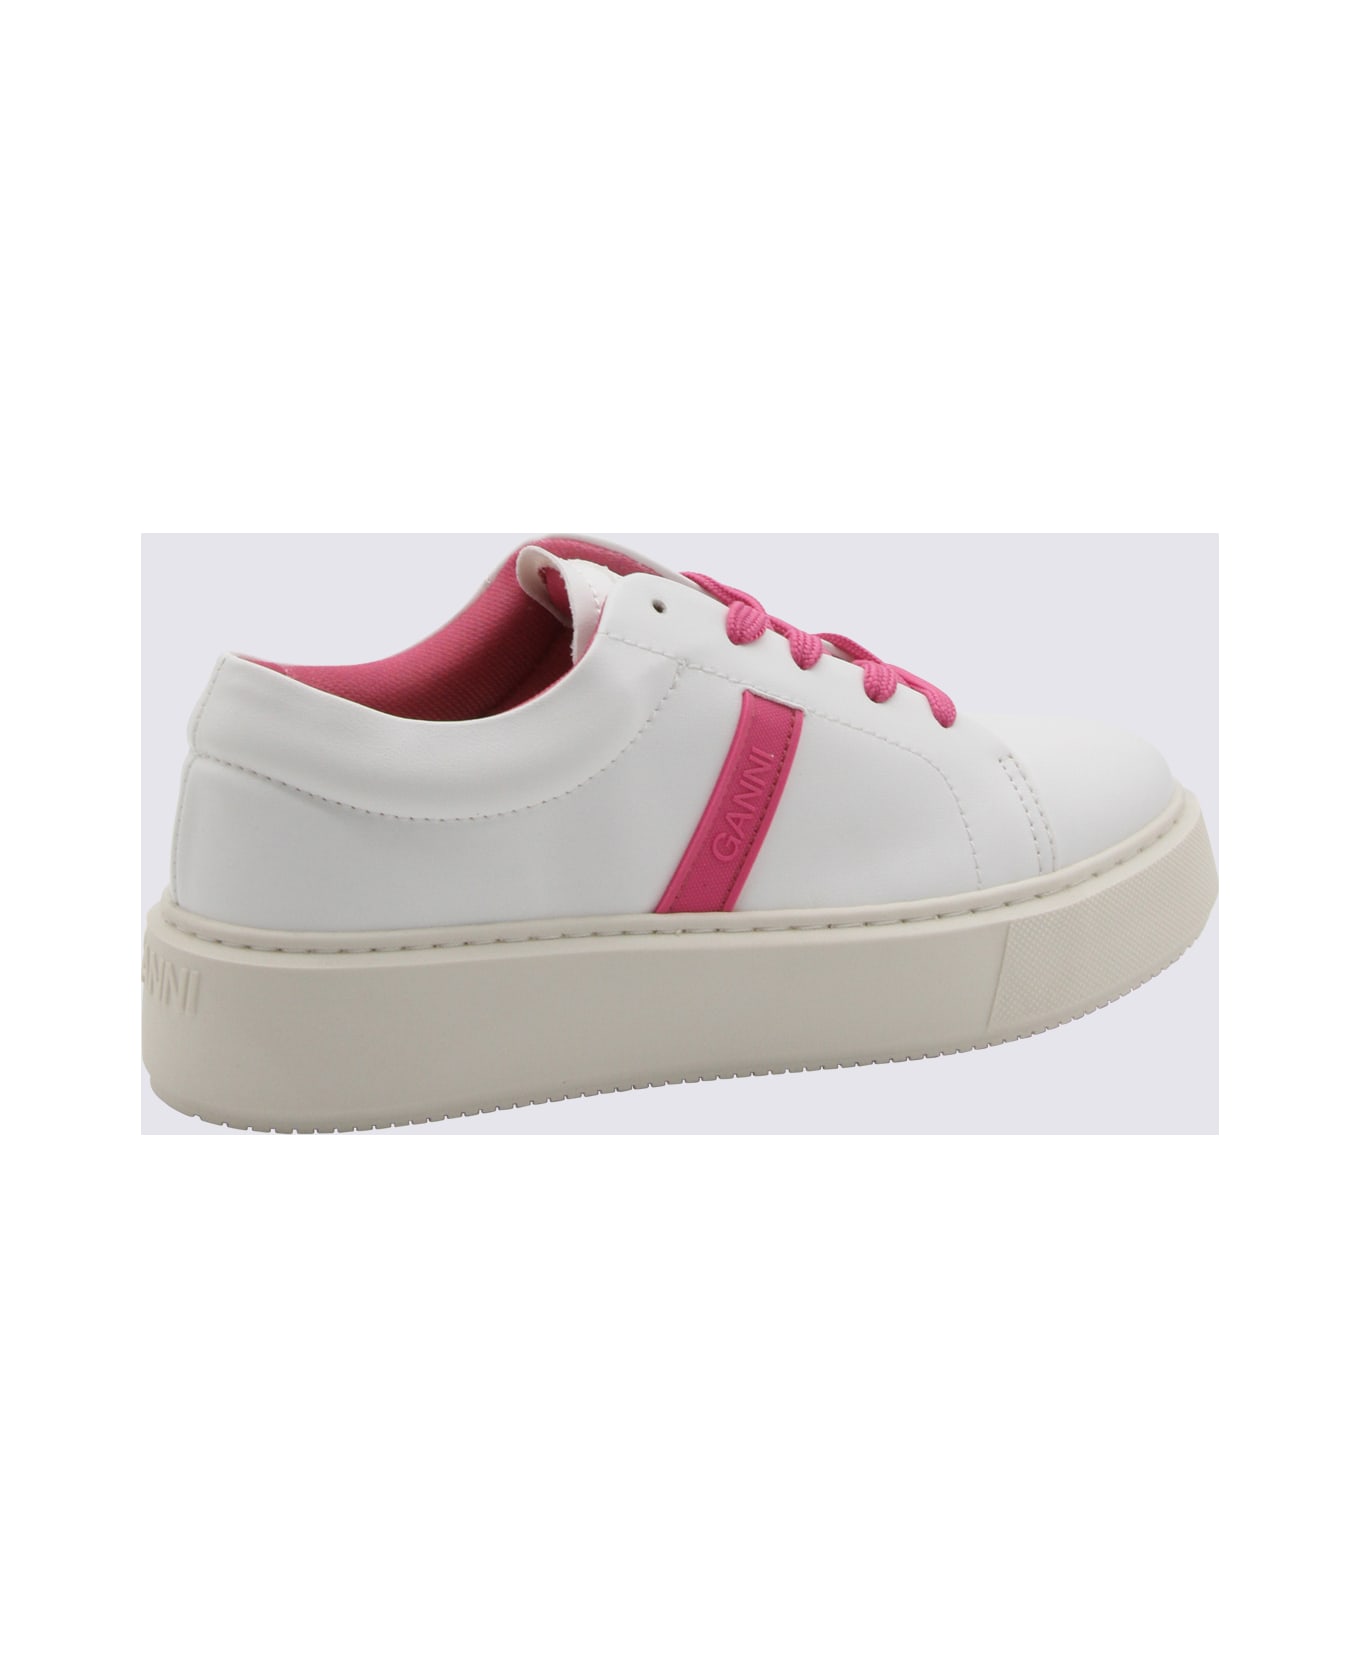 Ganni Shoking Pink Low Top Sneakers - Shocking Pink